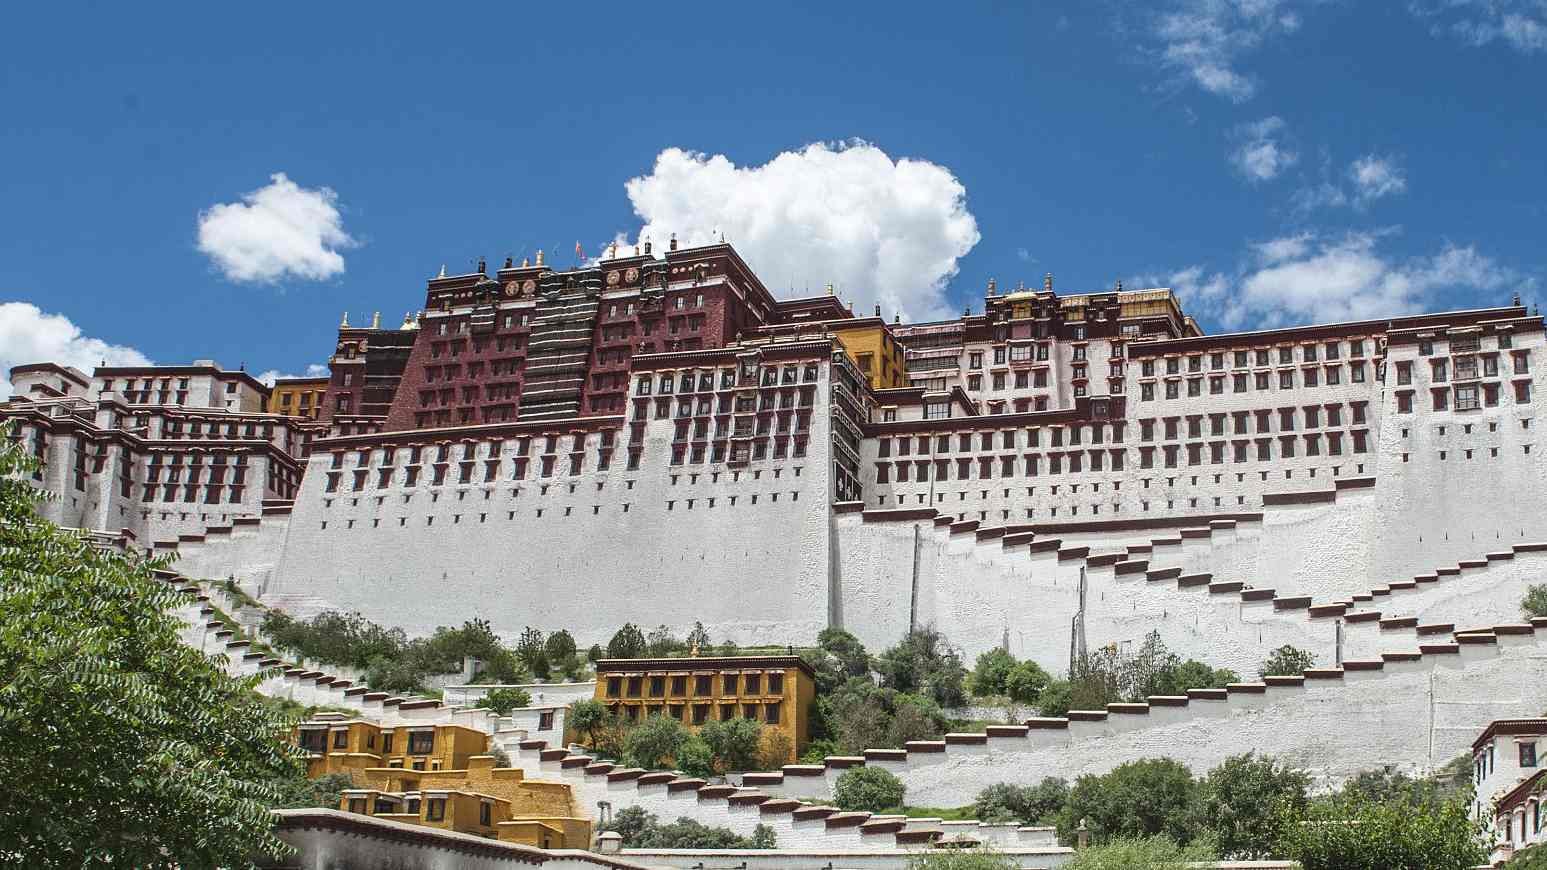  China dezvoltă un program de muncă în masă în Tibet